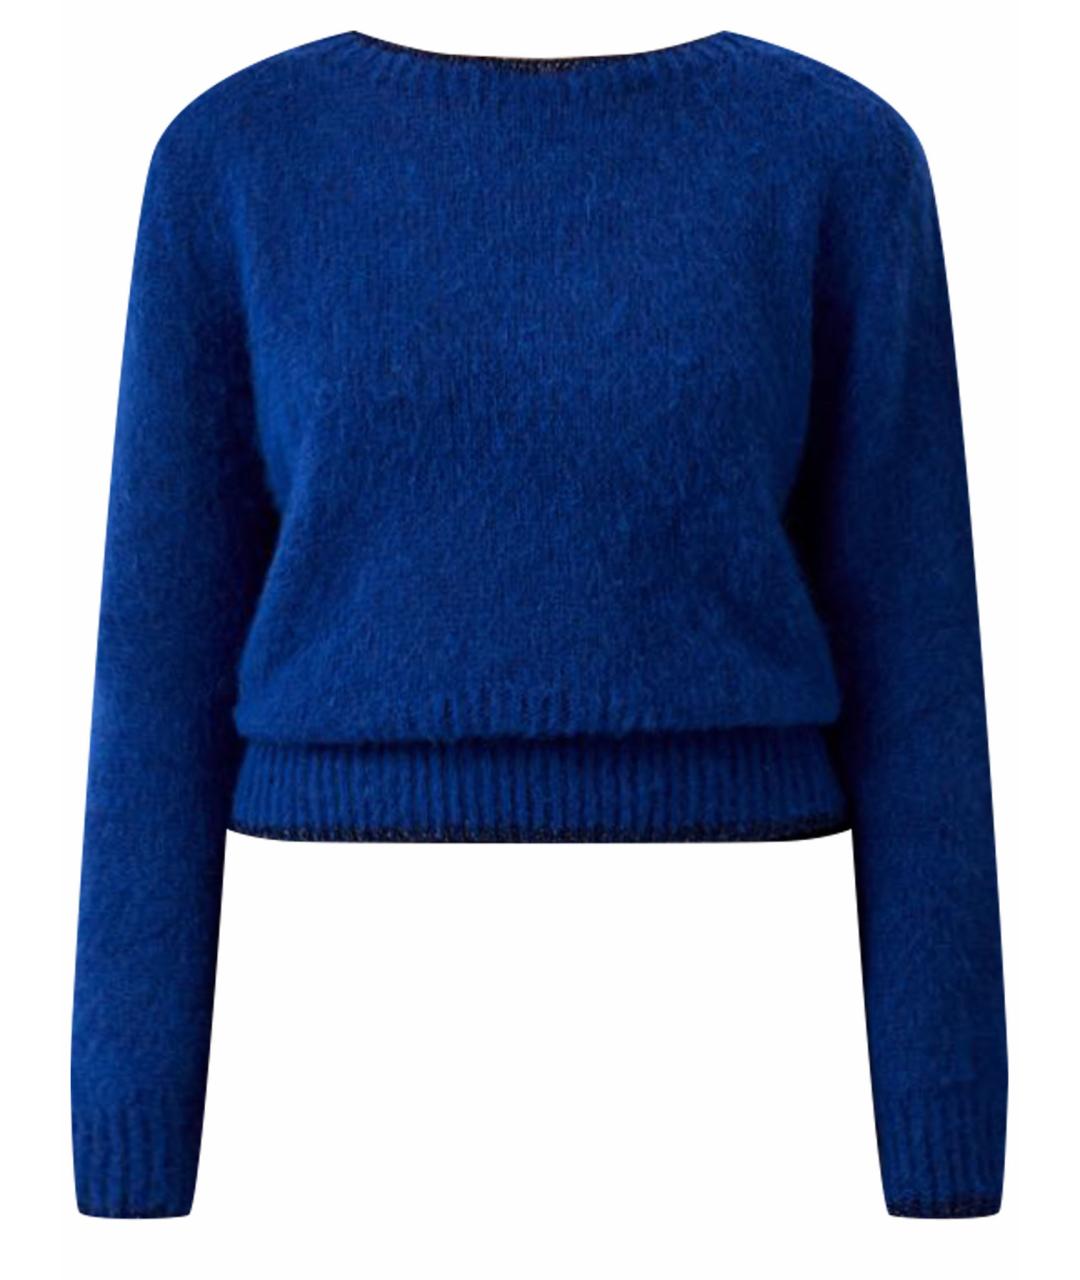 LIU JO Синий шерстяной джемпер / свитер, фото 1